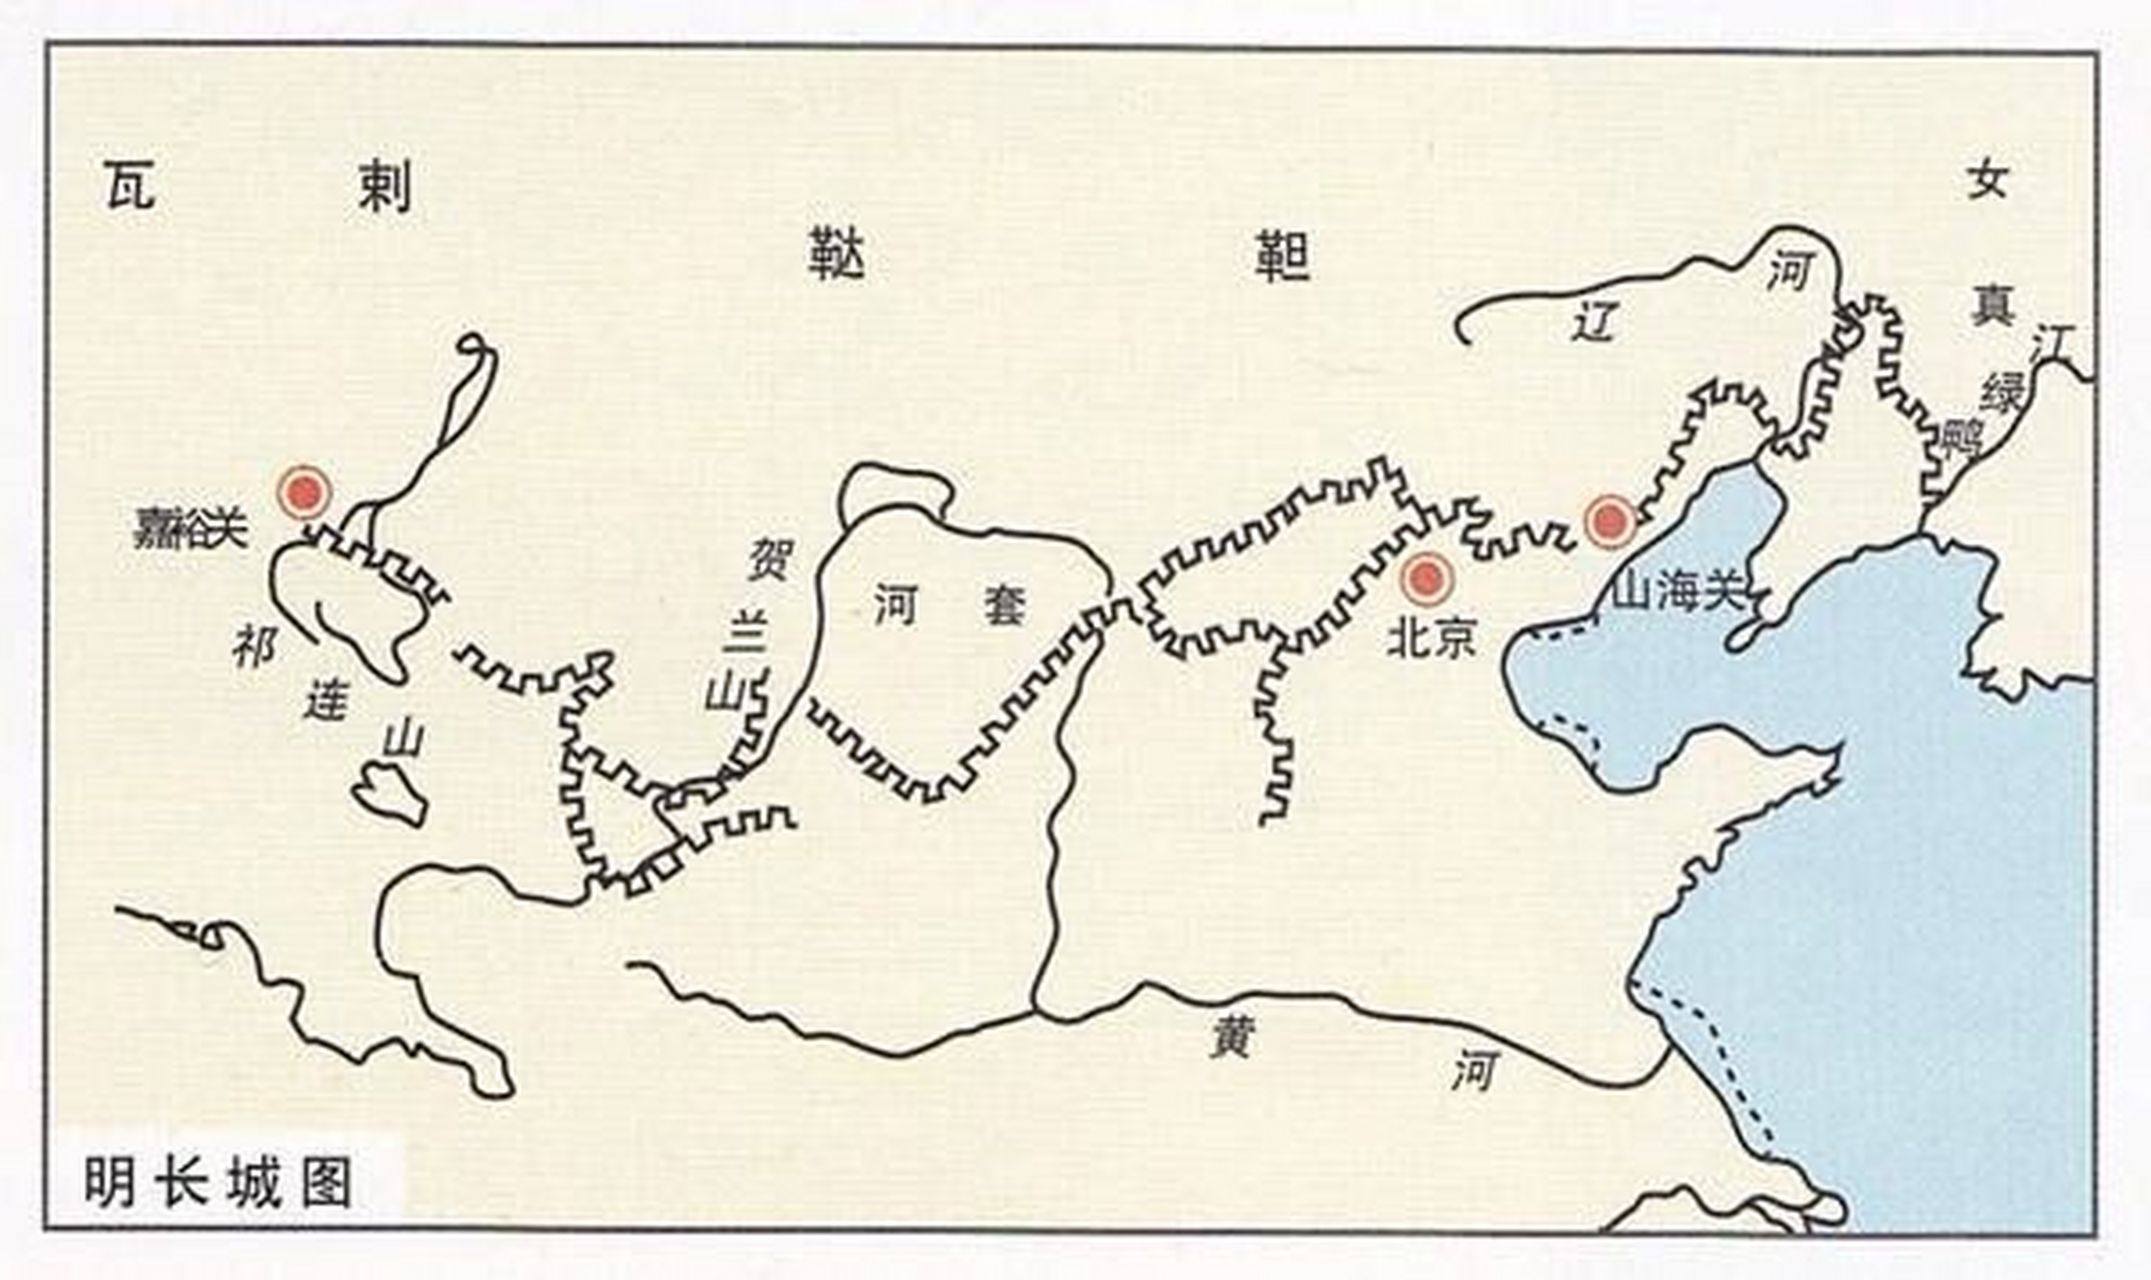 首先是起点终点不同,秦长城是西起林找,东至辽东